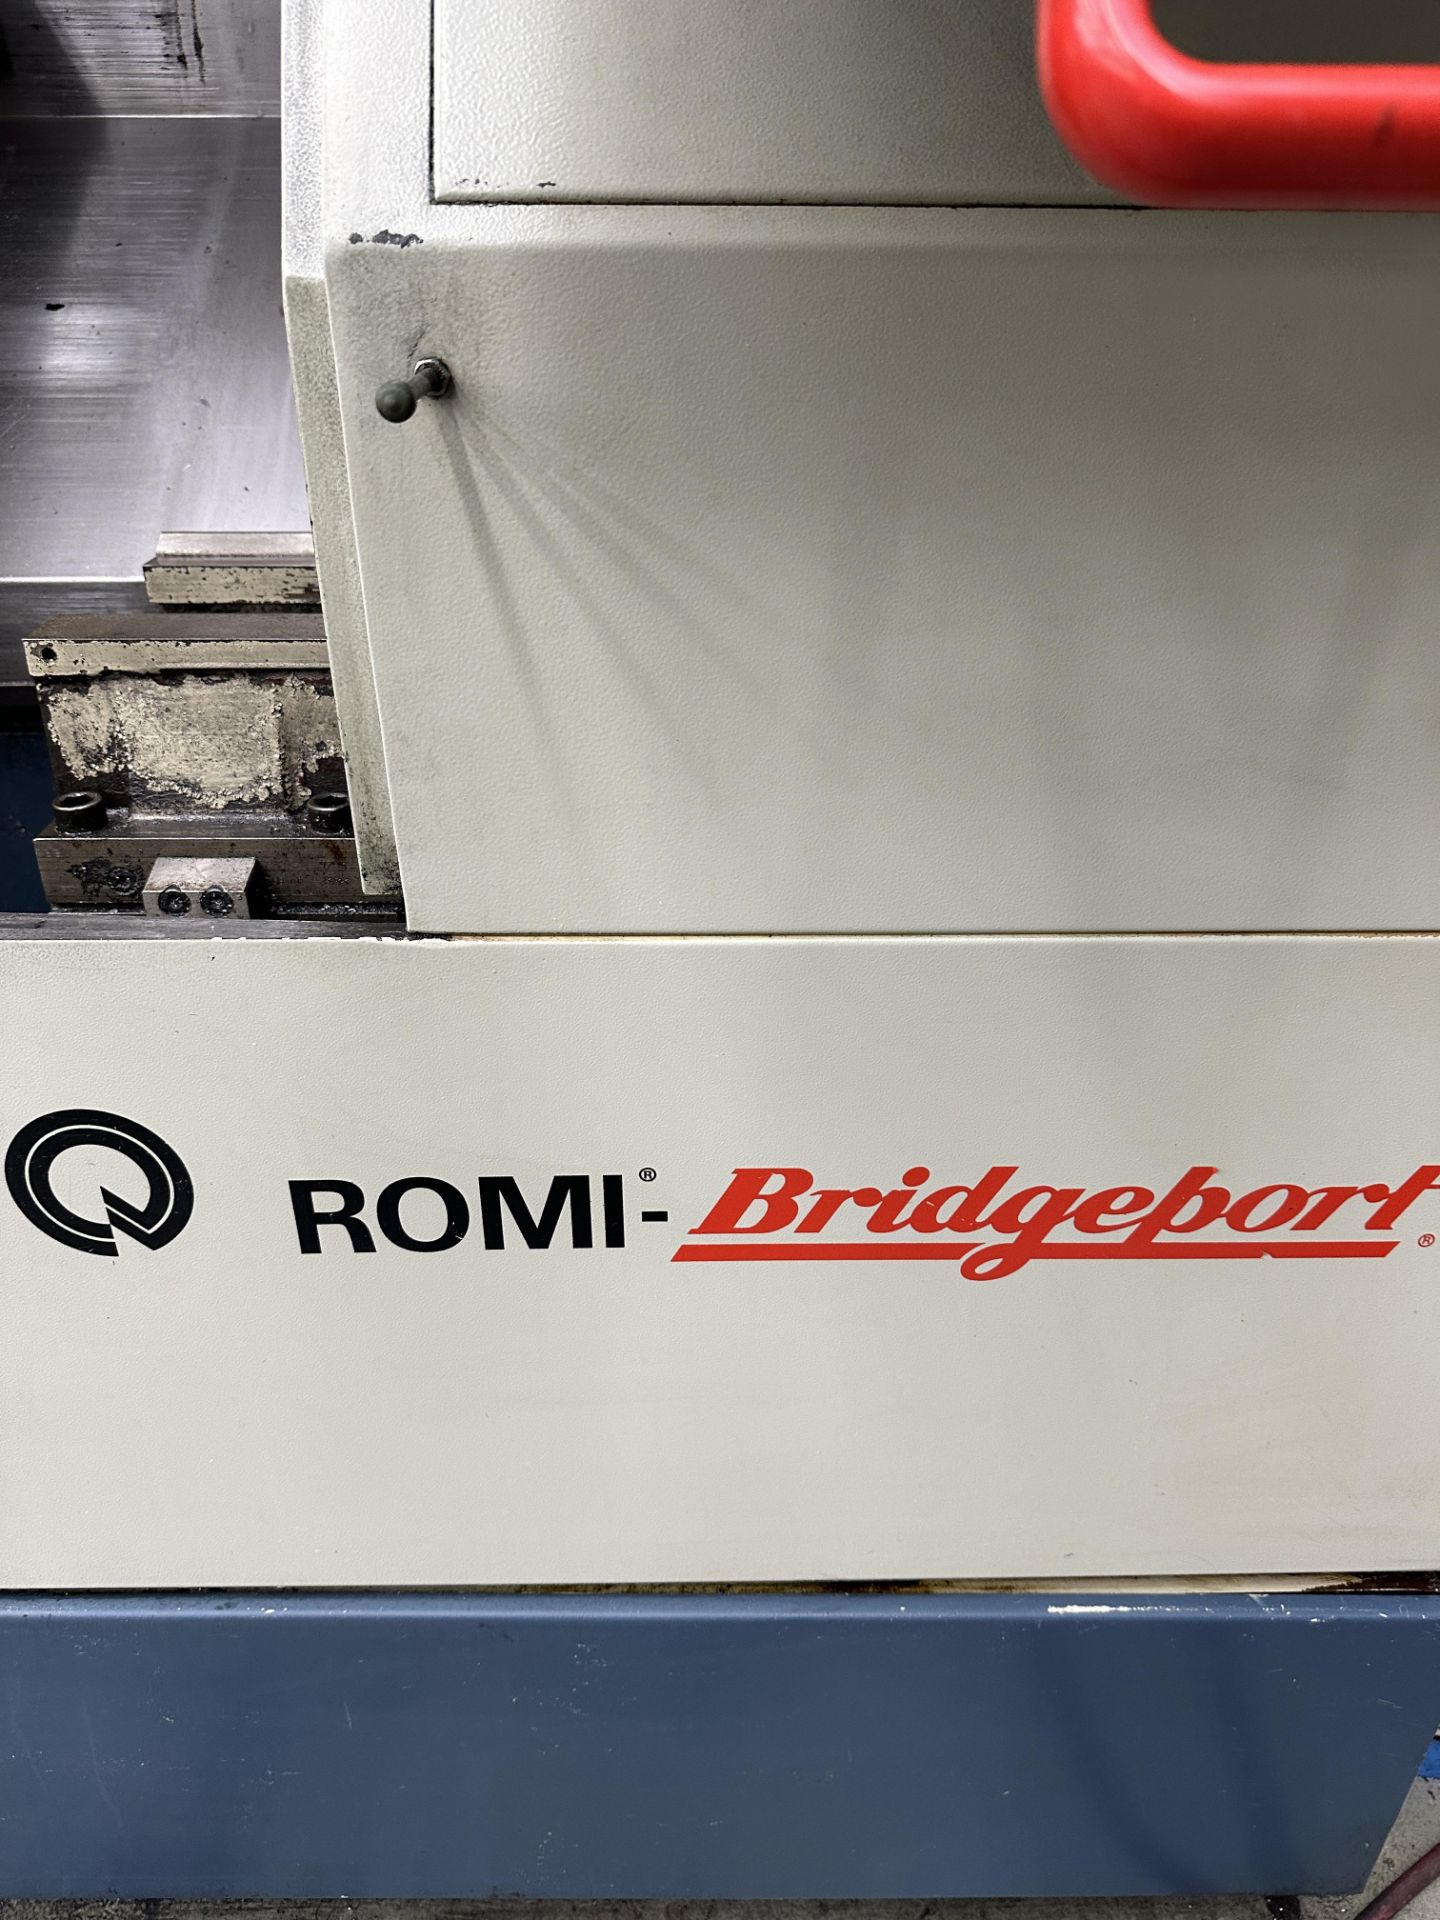 Romi Bridgeport Power Path CNC Lathe s/n 016-0021144-350, Bridgeport DX-32 CNC Control - Image 2 of 8